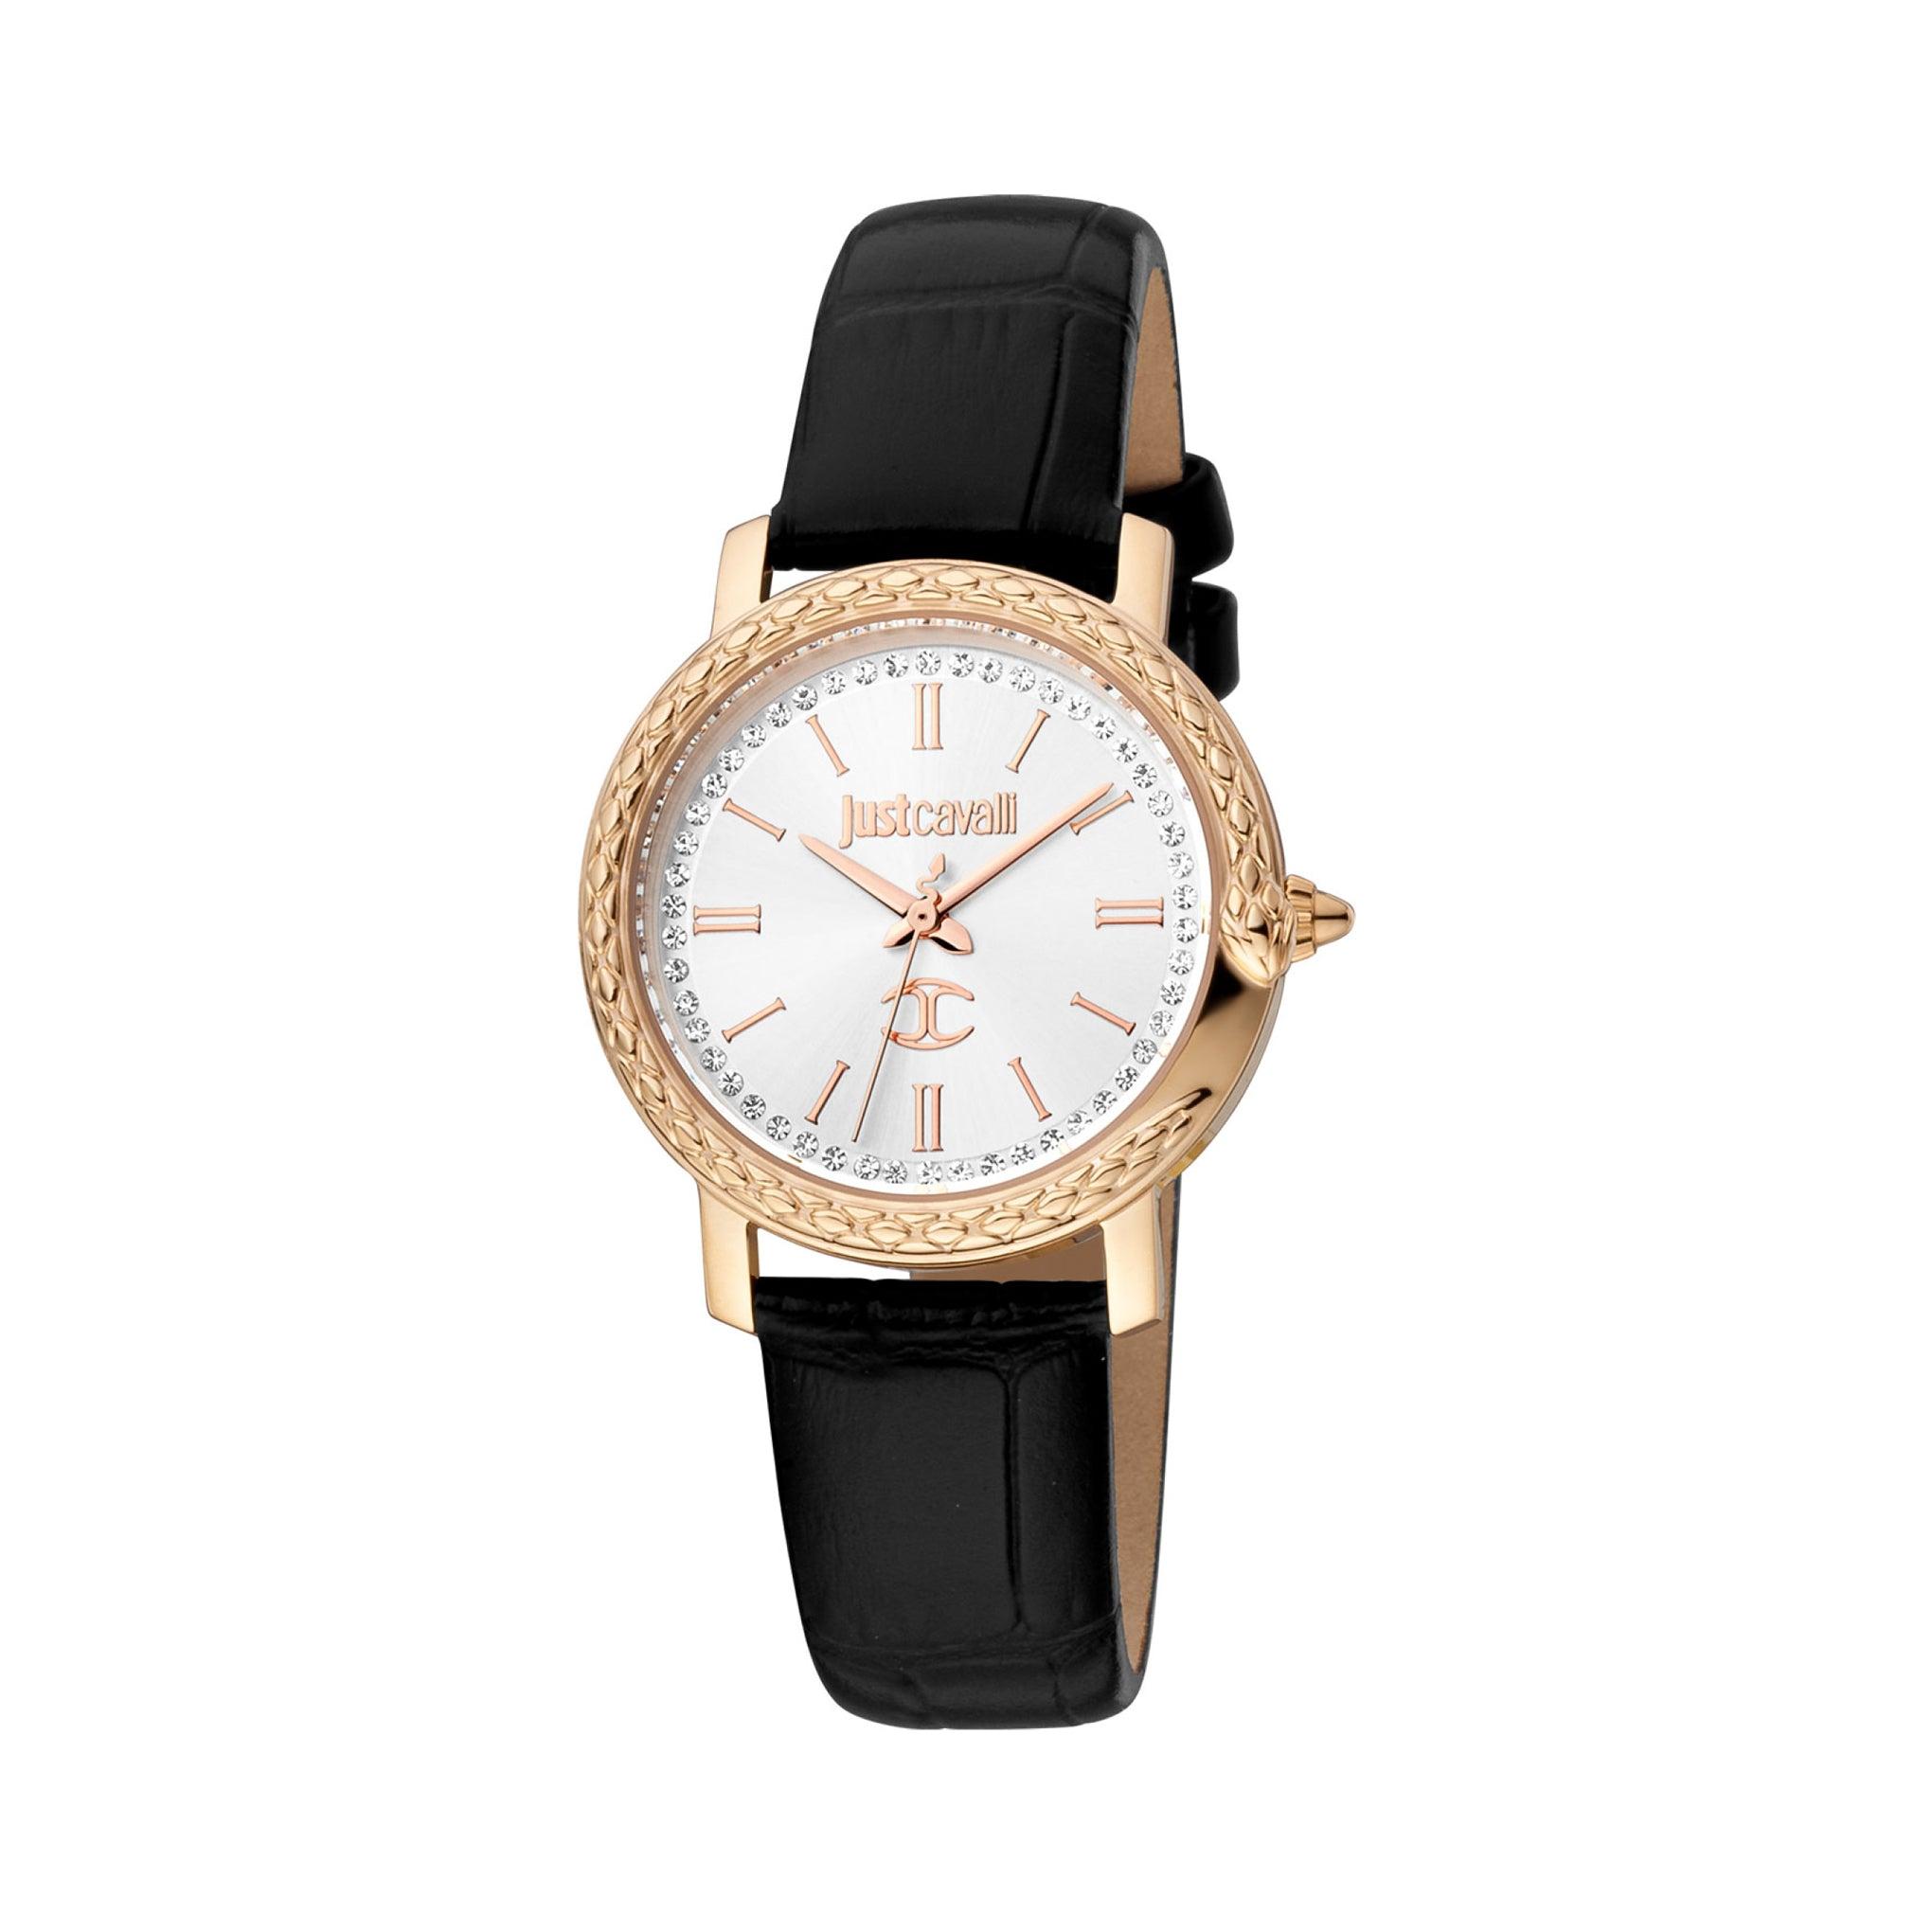 ساعة يد نسائية - أبيض و ذهبي - بحزام أسود من الجلد الطبيعي هوغو بوس Just Cavalli Women's Black Leather Wrist Watch